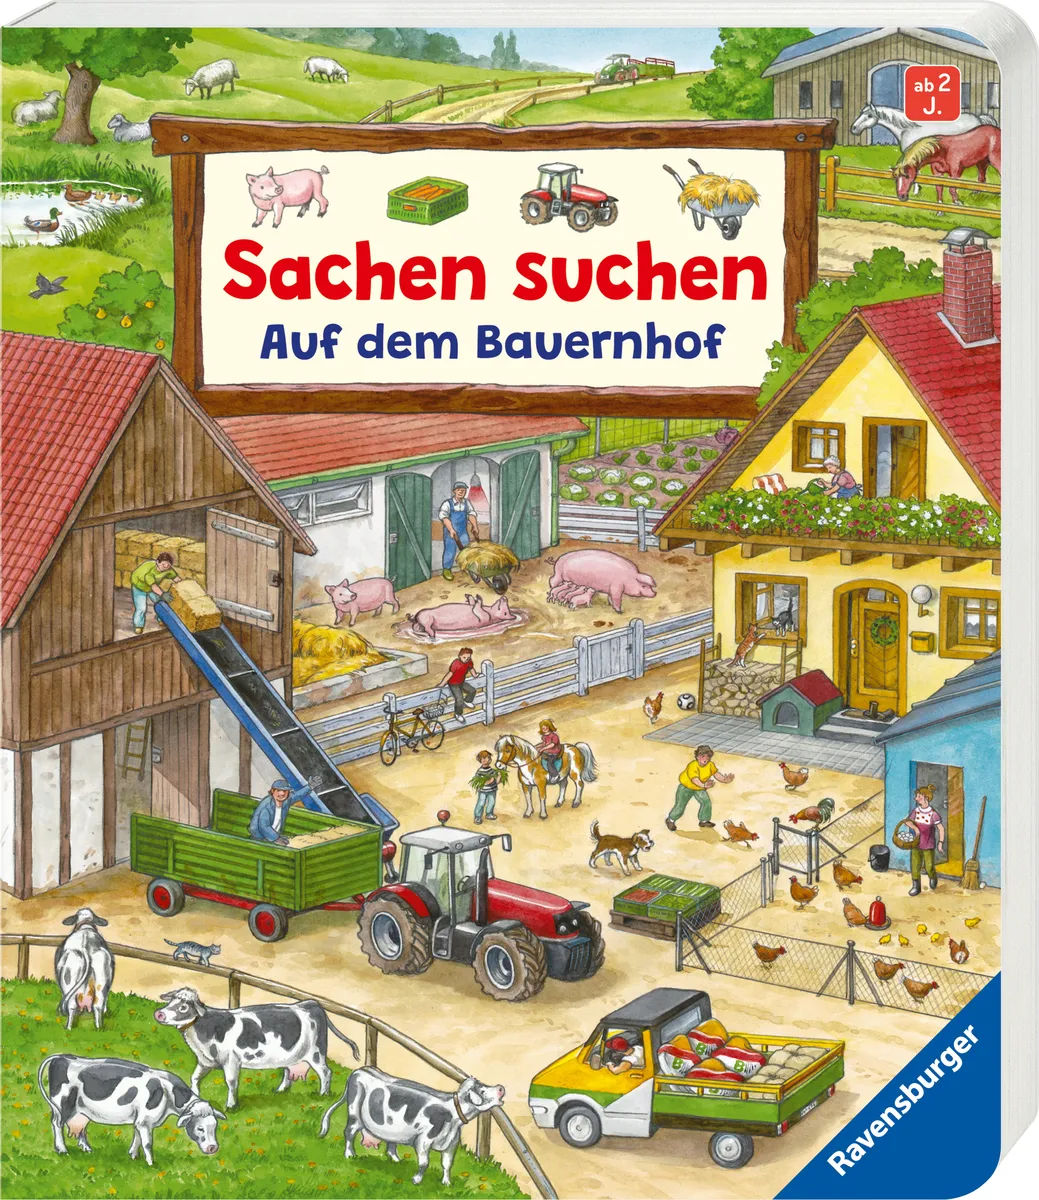 Sachen suchen: Auf dem Bauernhof – Wimmelbuch from 2 Jahren